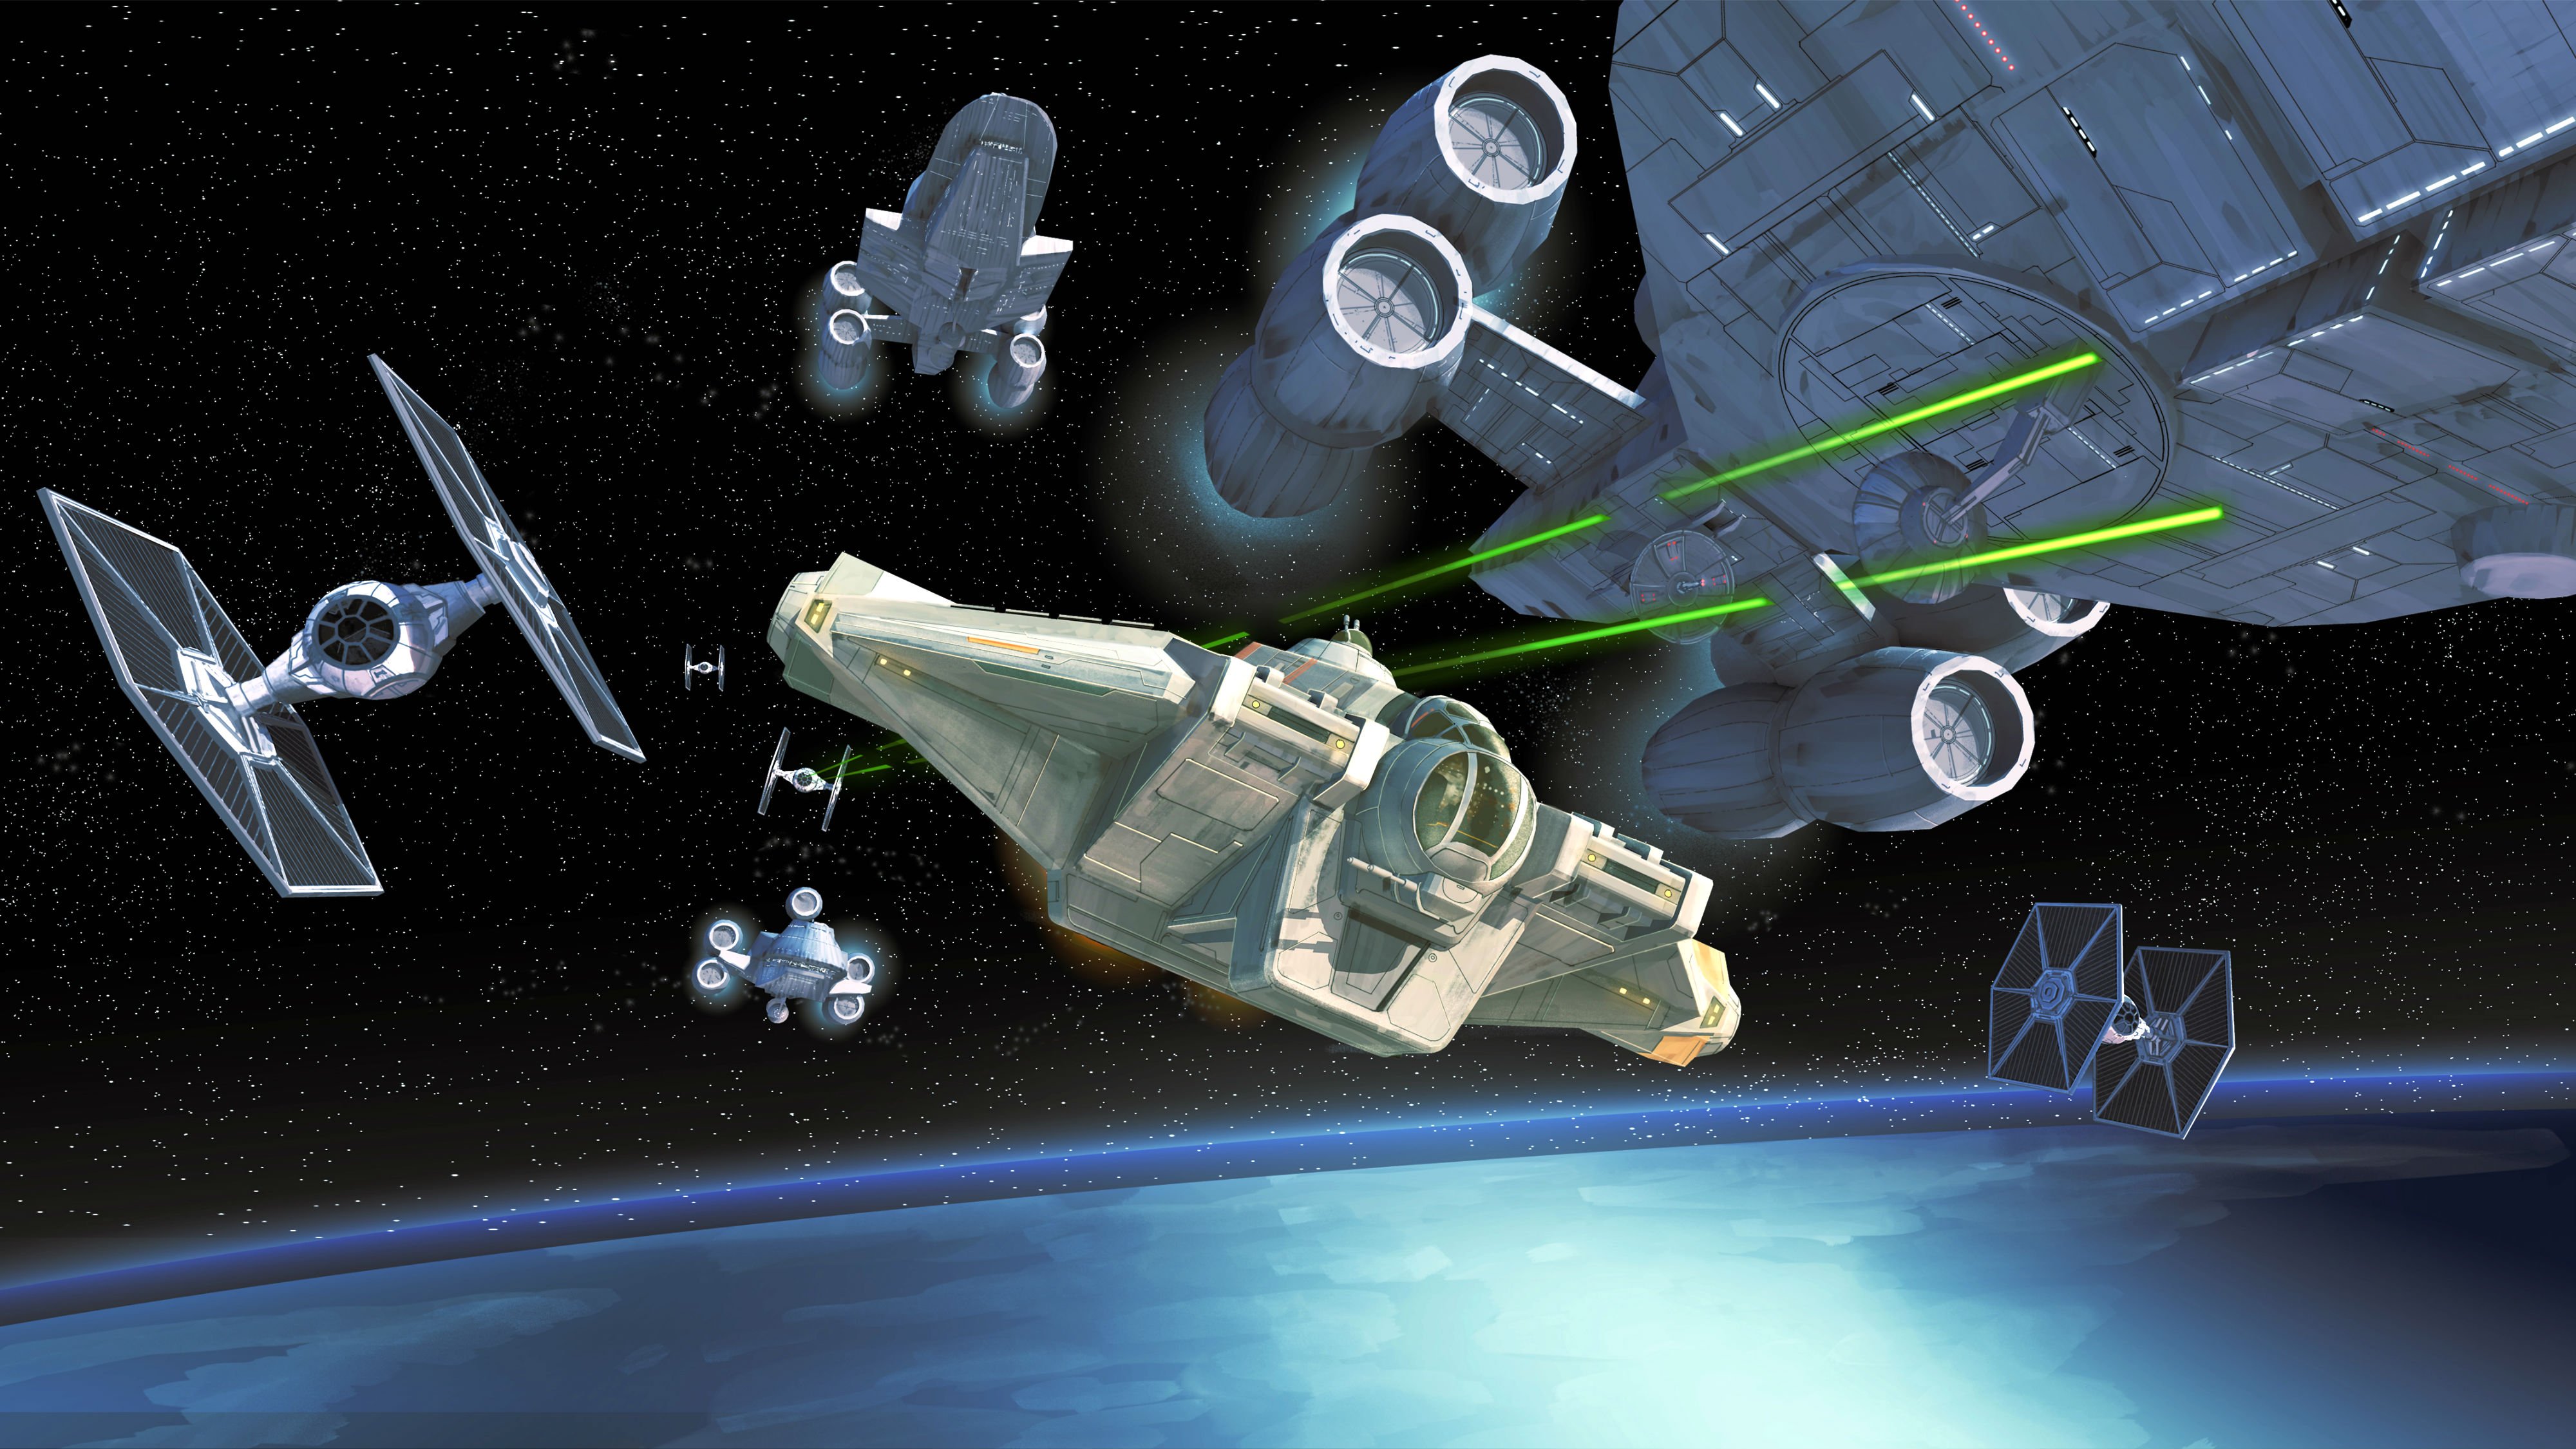 스타 워즈 애니메이션 배경 화면,우주선,우주,차량,소설 속의 인물,대기권 밖